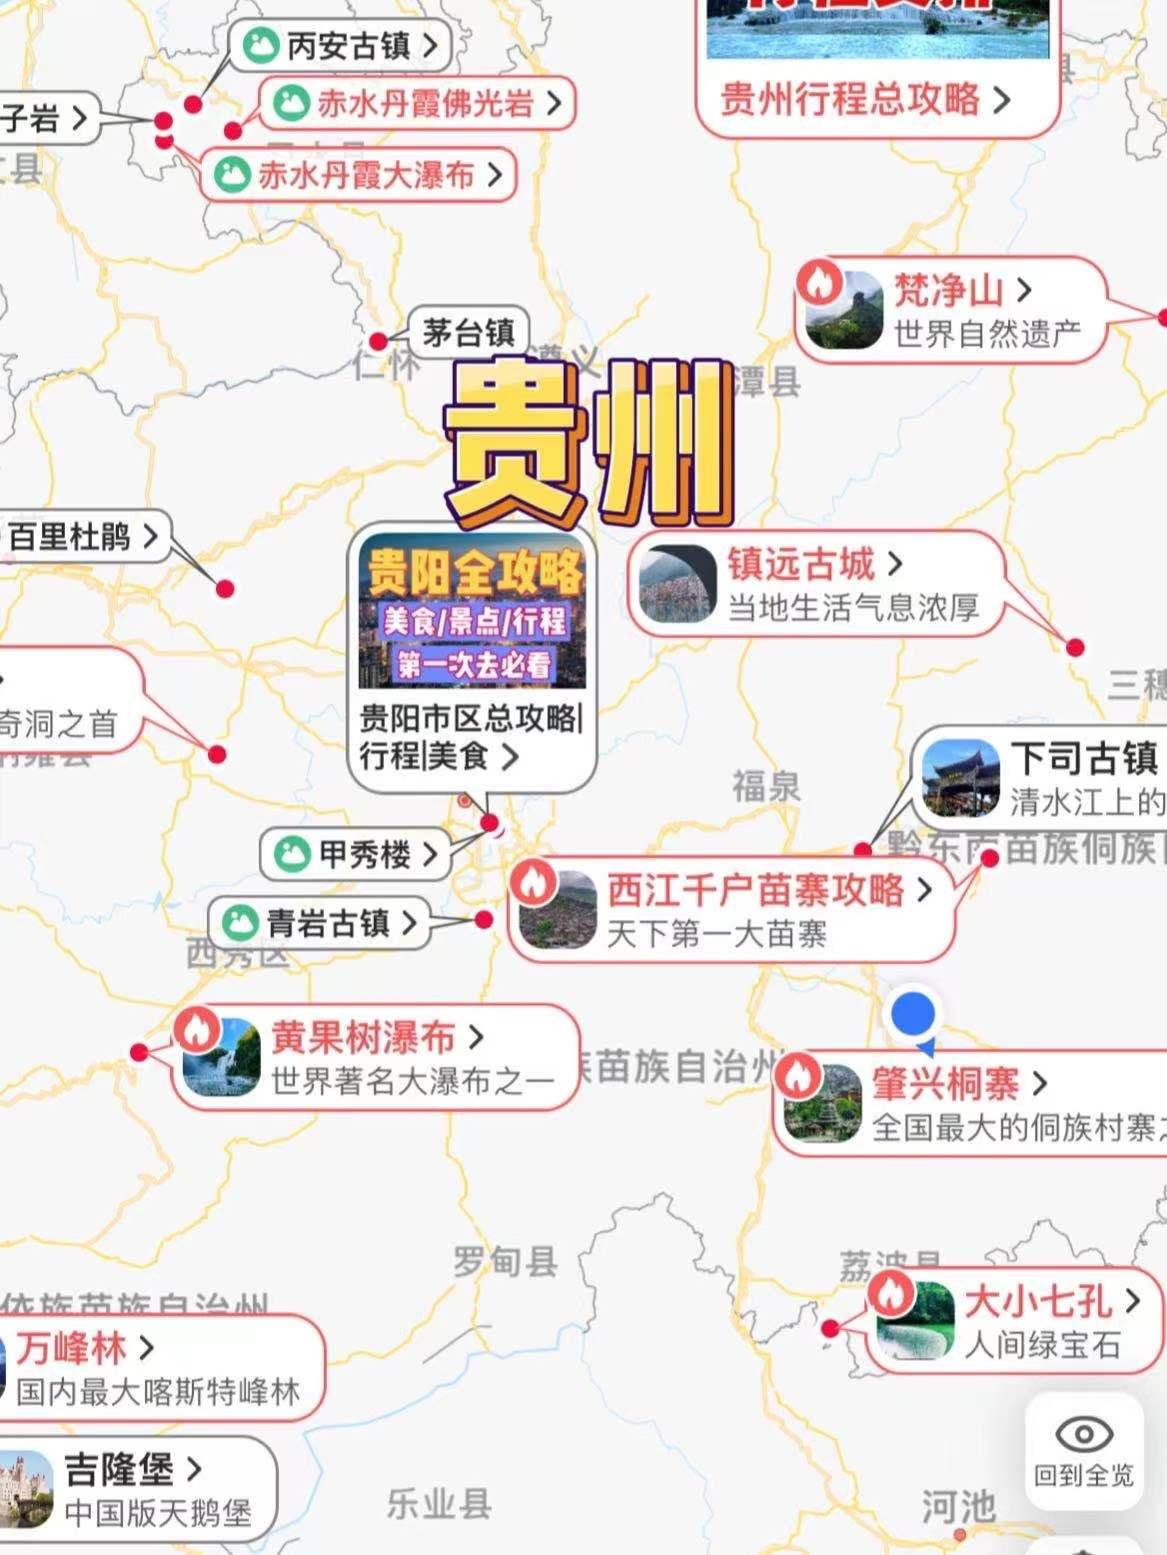 去贵州旅游贵州旅游2021年攻略个人亲测景点线路费用美食